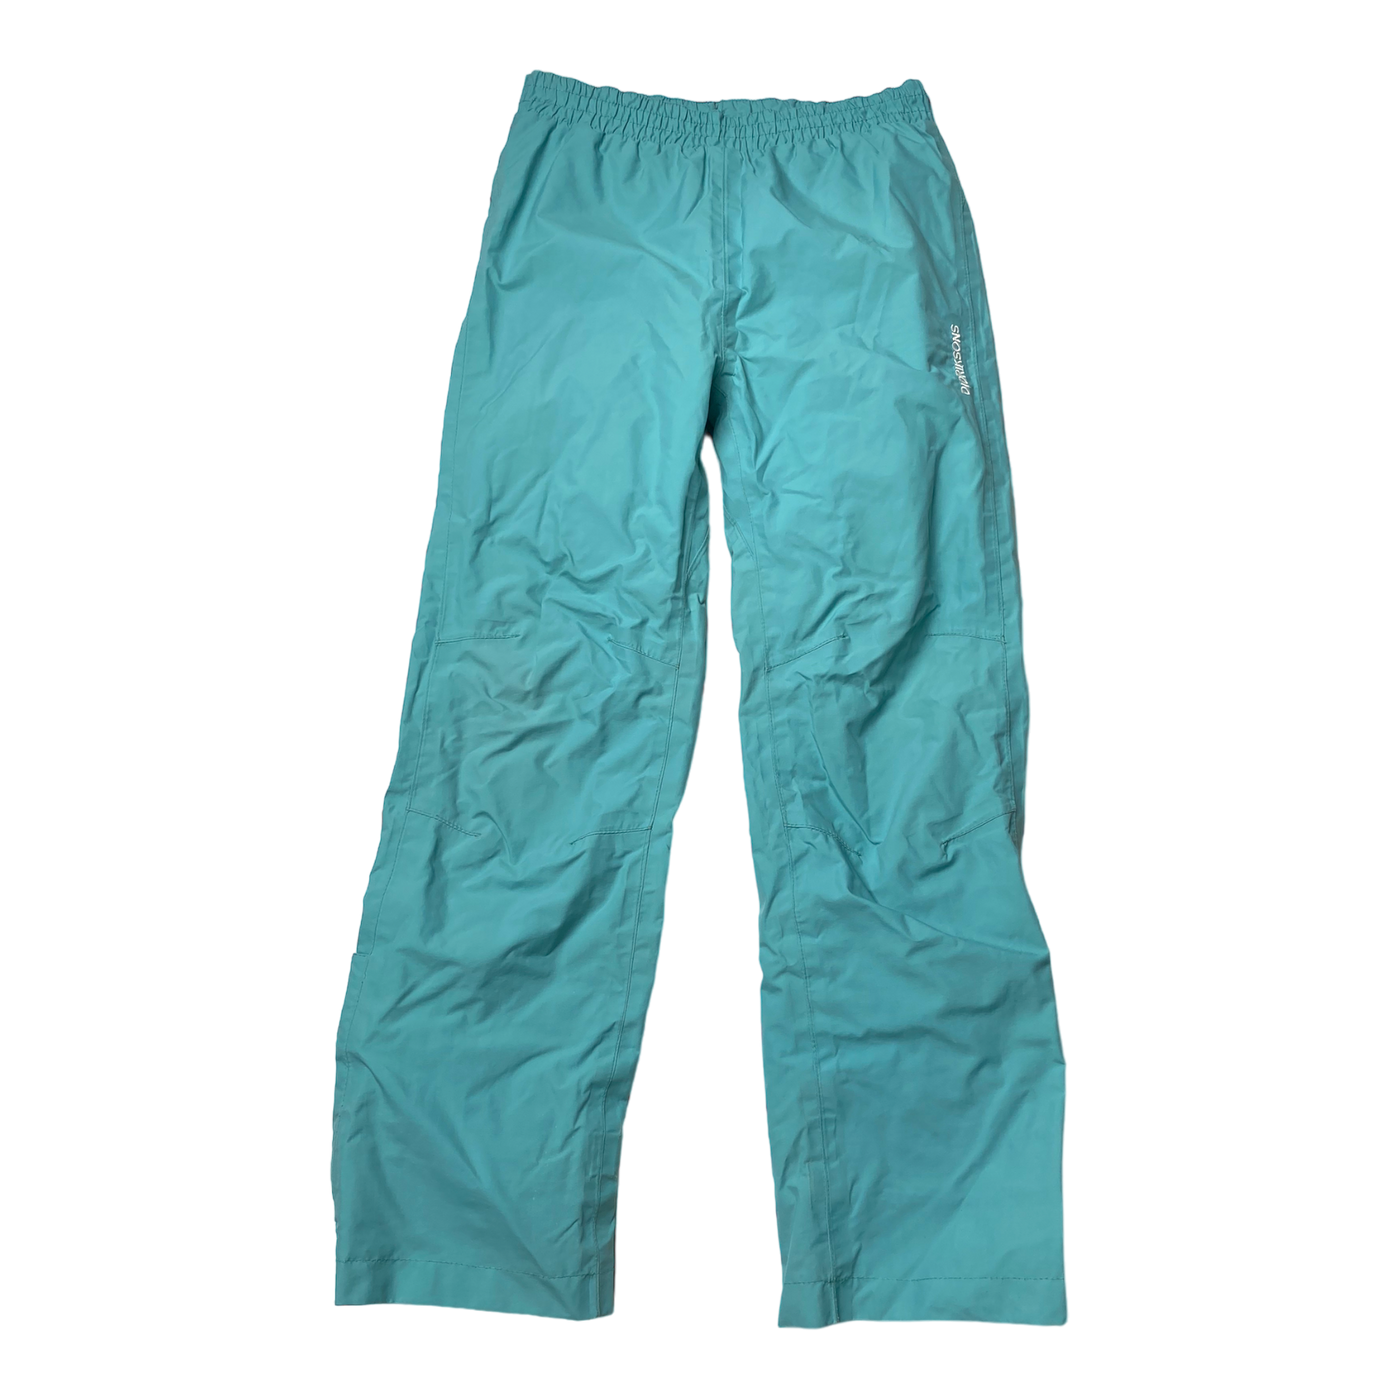 Didriksons midseason pants, aqua blue | 130cm